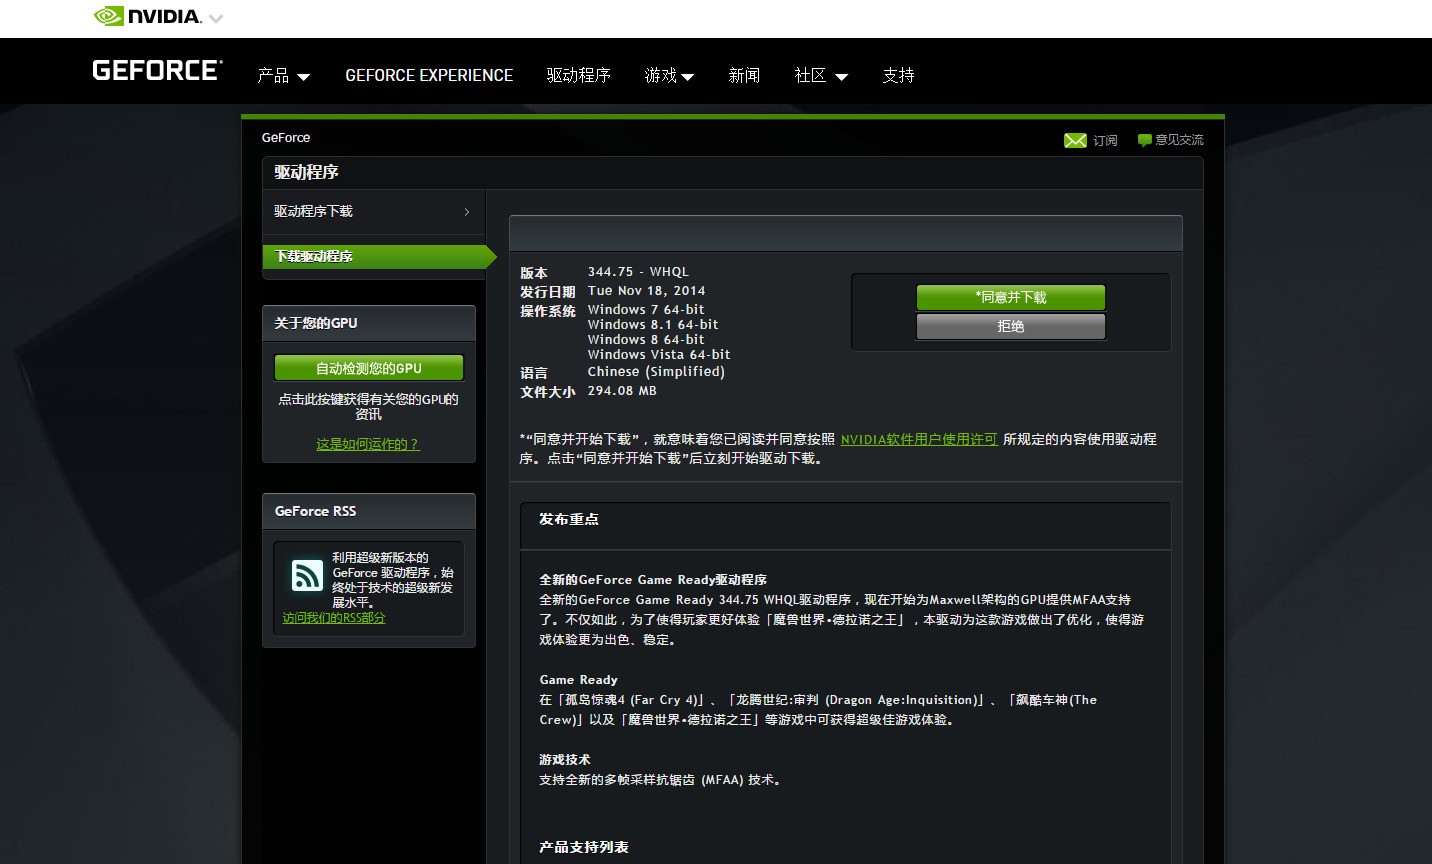 Nvidia GeForce GTX 560 Ti这显卡的最新驱动在哪里下载啊?